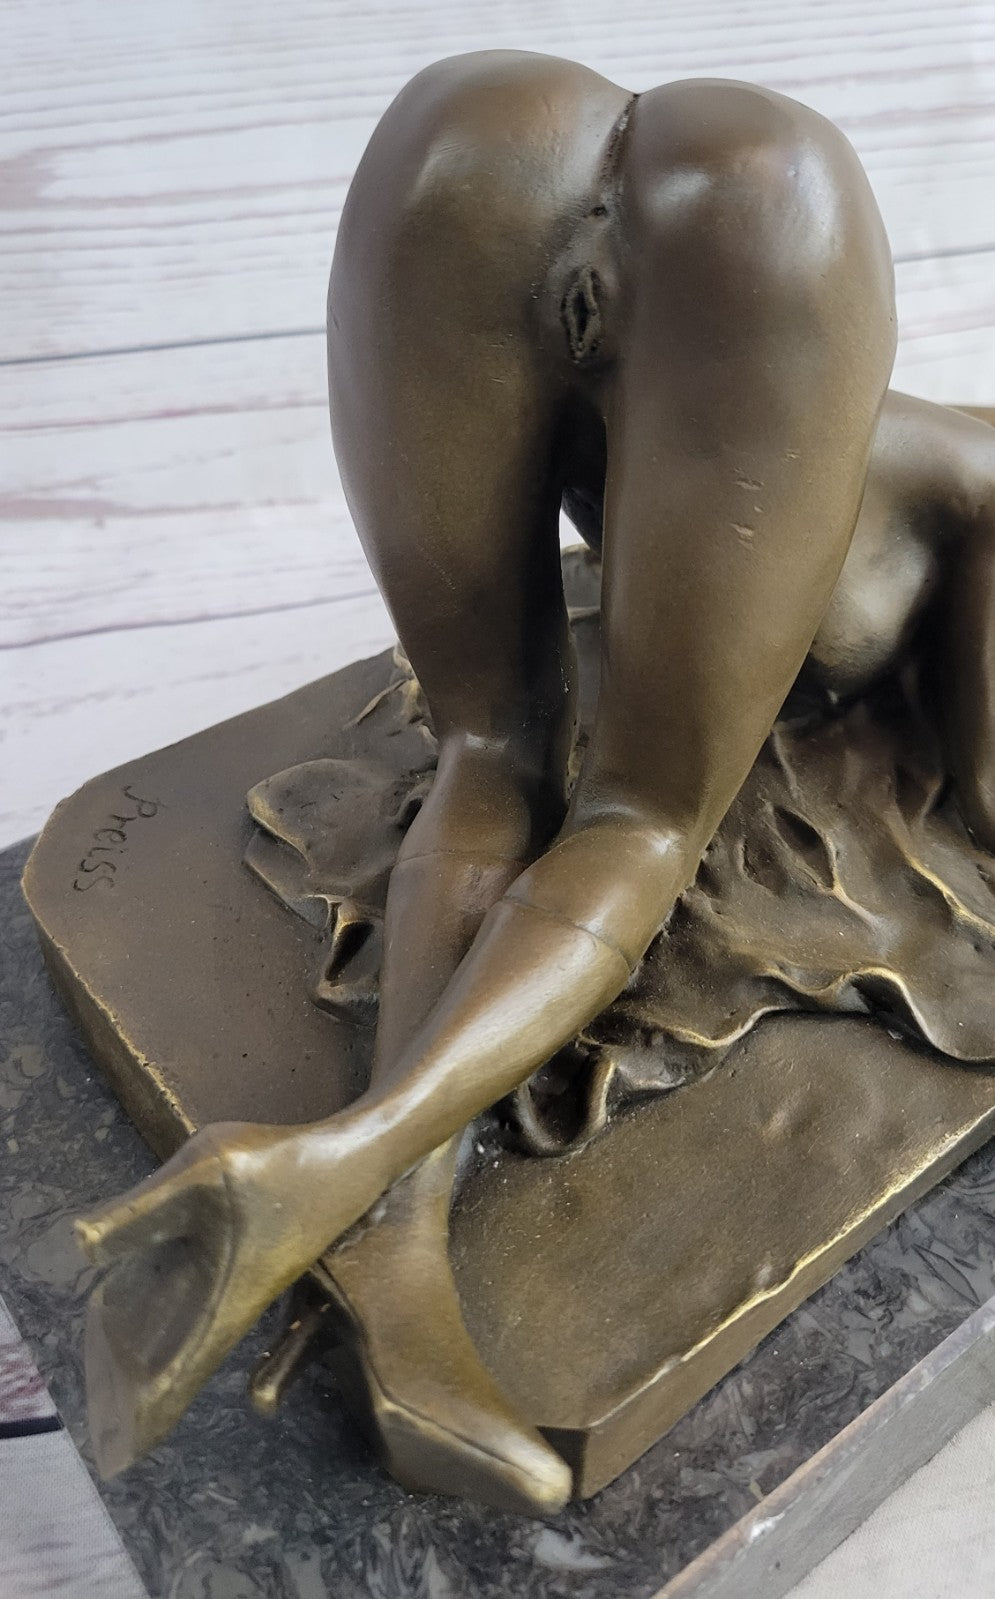 Bronze Semi Nude Erotic Sculpture Statue Art Figurine Woman Figure Fantasy Art